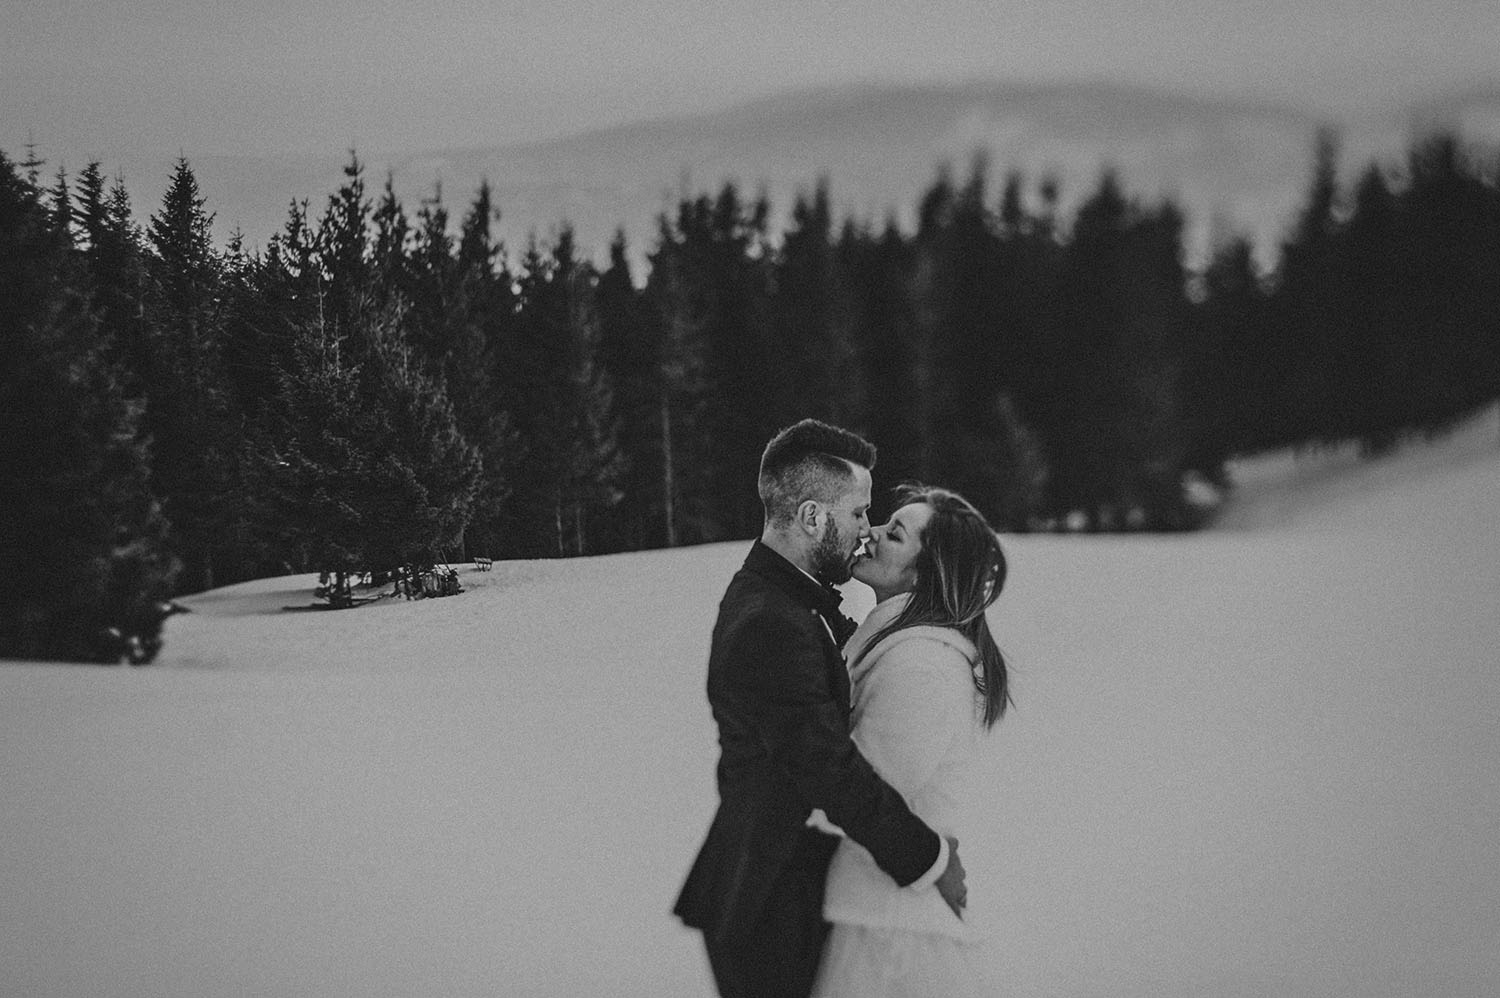 Skrzyczne ,plener ślubny w górach,wesele w górach ,fotografia ślubna Śląsk, Szczyrk zdjęcia ślubne , Tomasz Konopka